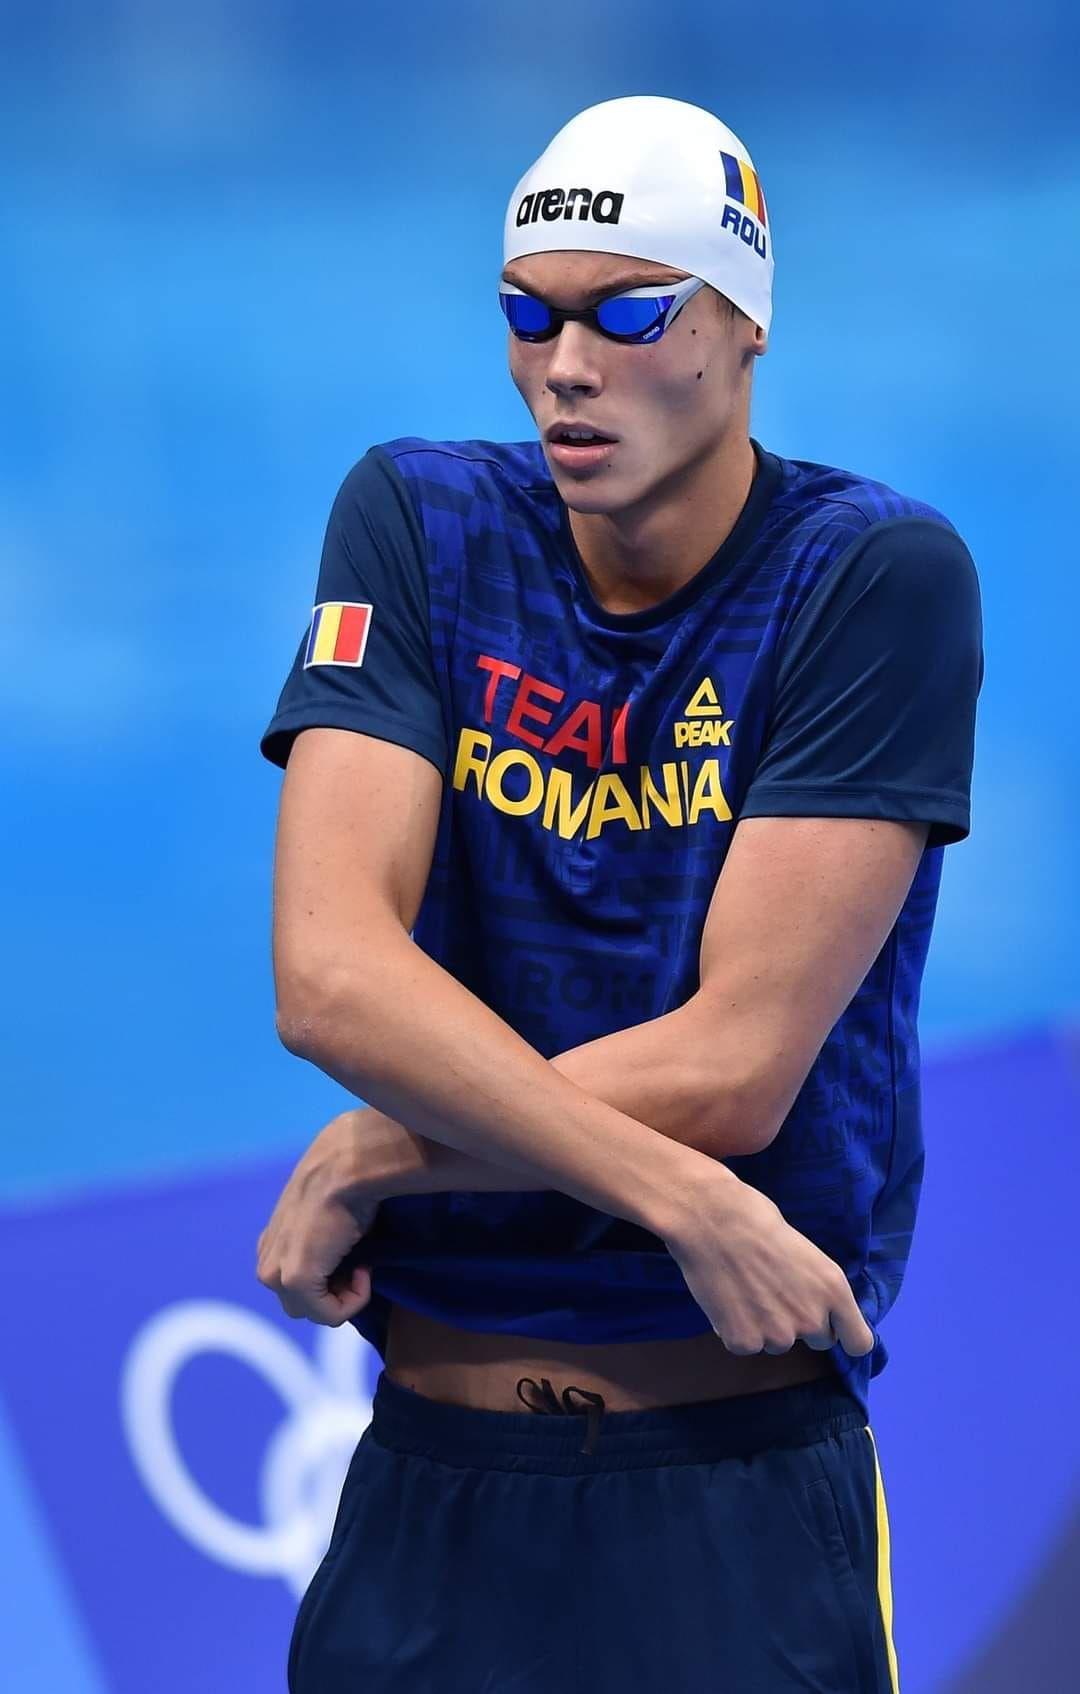 Barcelona îl aplaudă pe David Popovici! O nouă cursă de senzație încheiată cu aur pentru înotătorul român_13